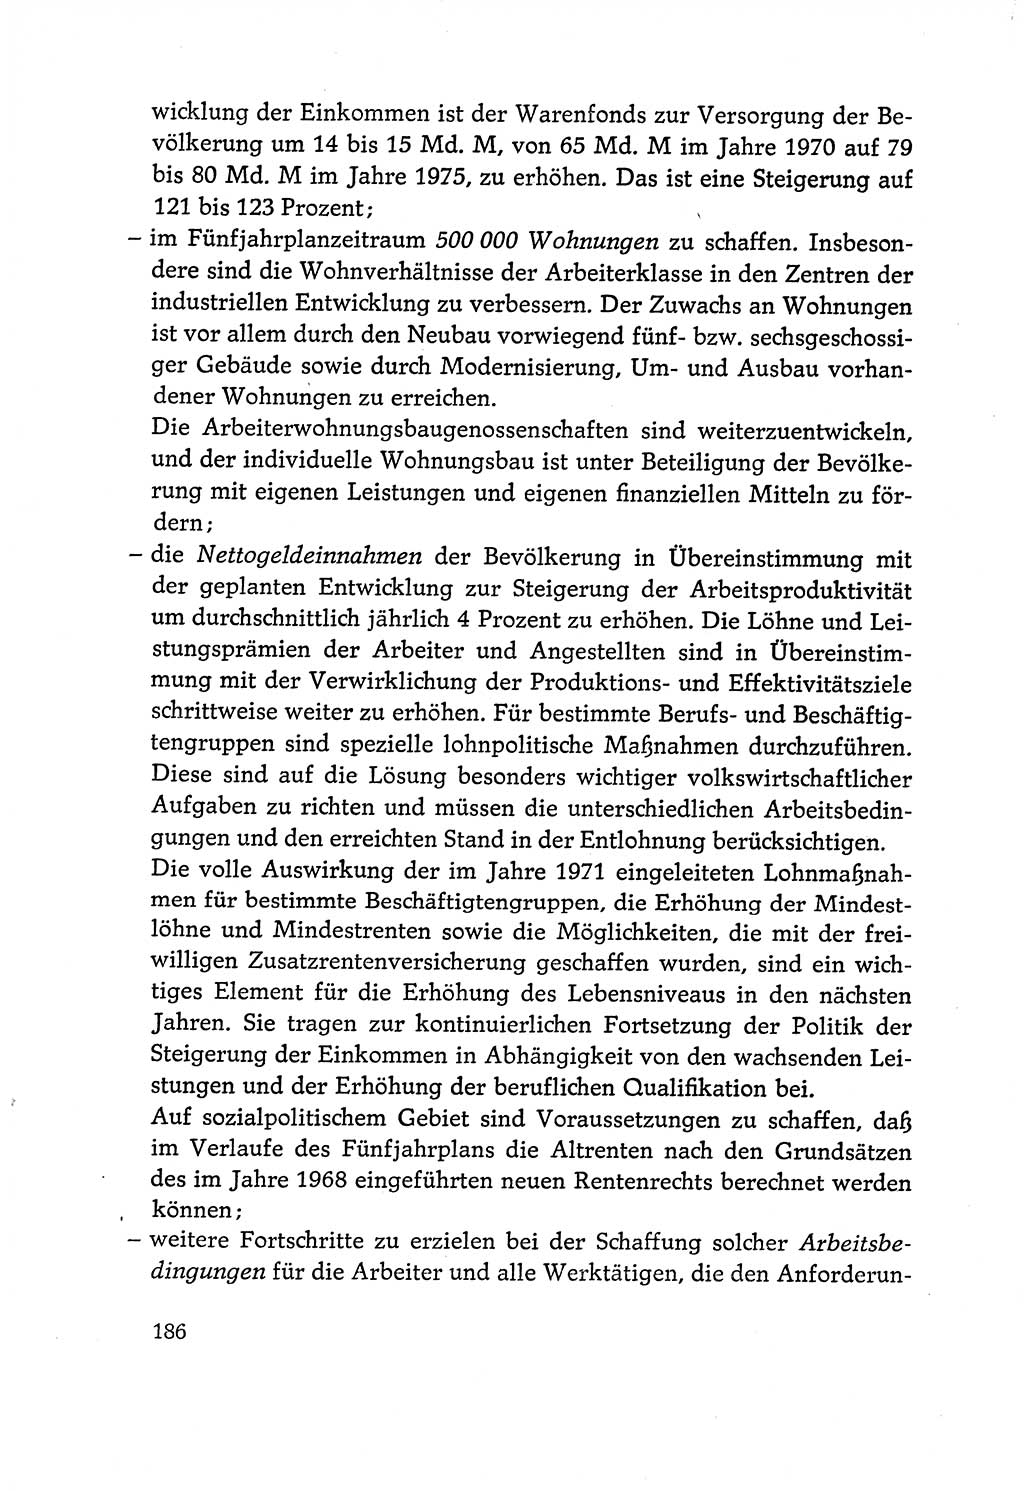 Dokumente der Sozialistischen Einheitspartei Deutschlands (SED) [Deutsche Demokratische Republik (DDR)] 1970-1971, Seite 186 (Dok. SED DDR 1970-1971, S. 186)